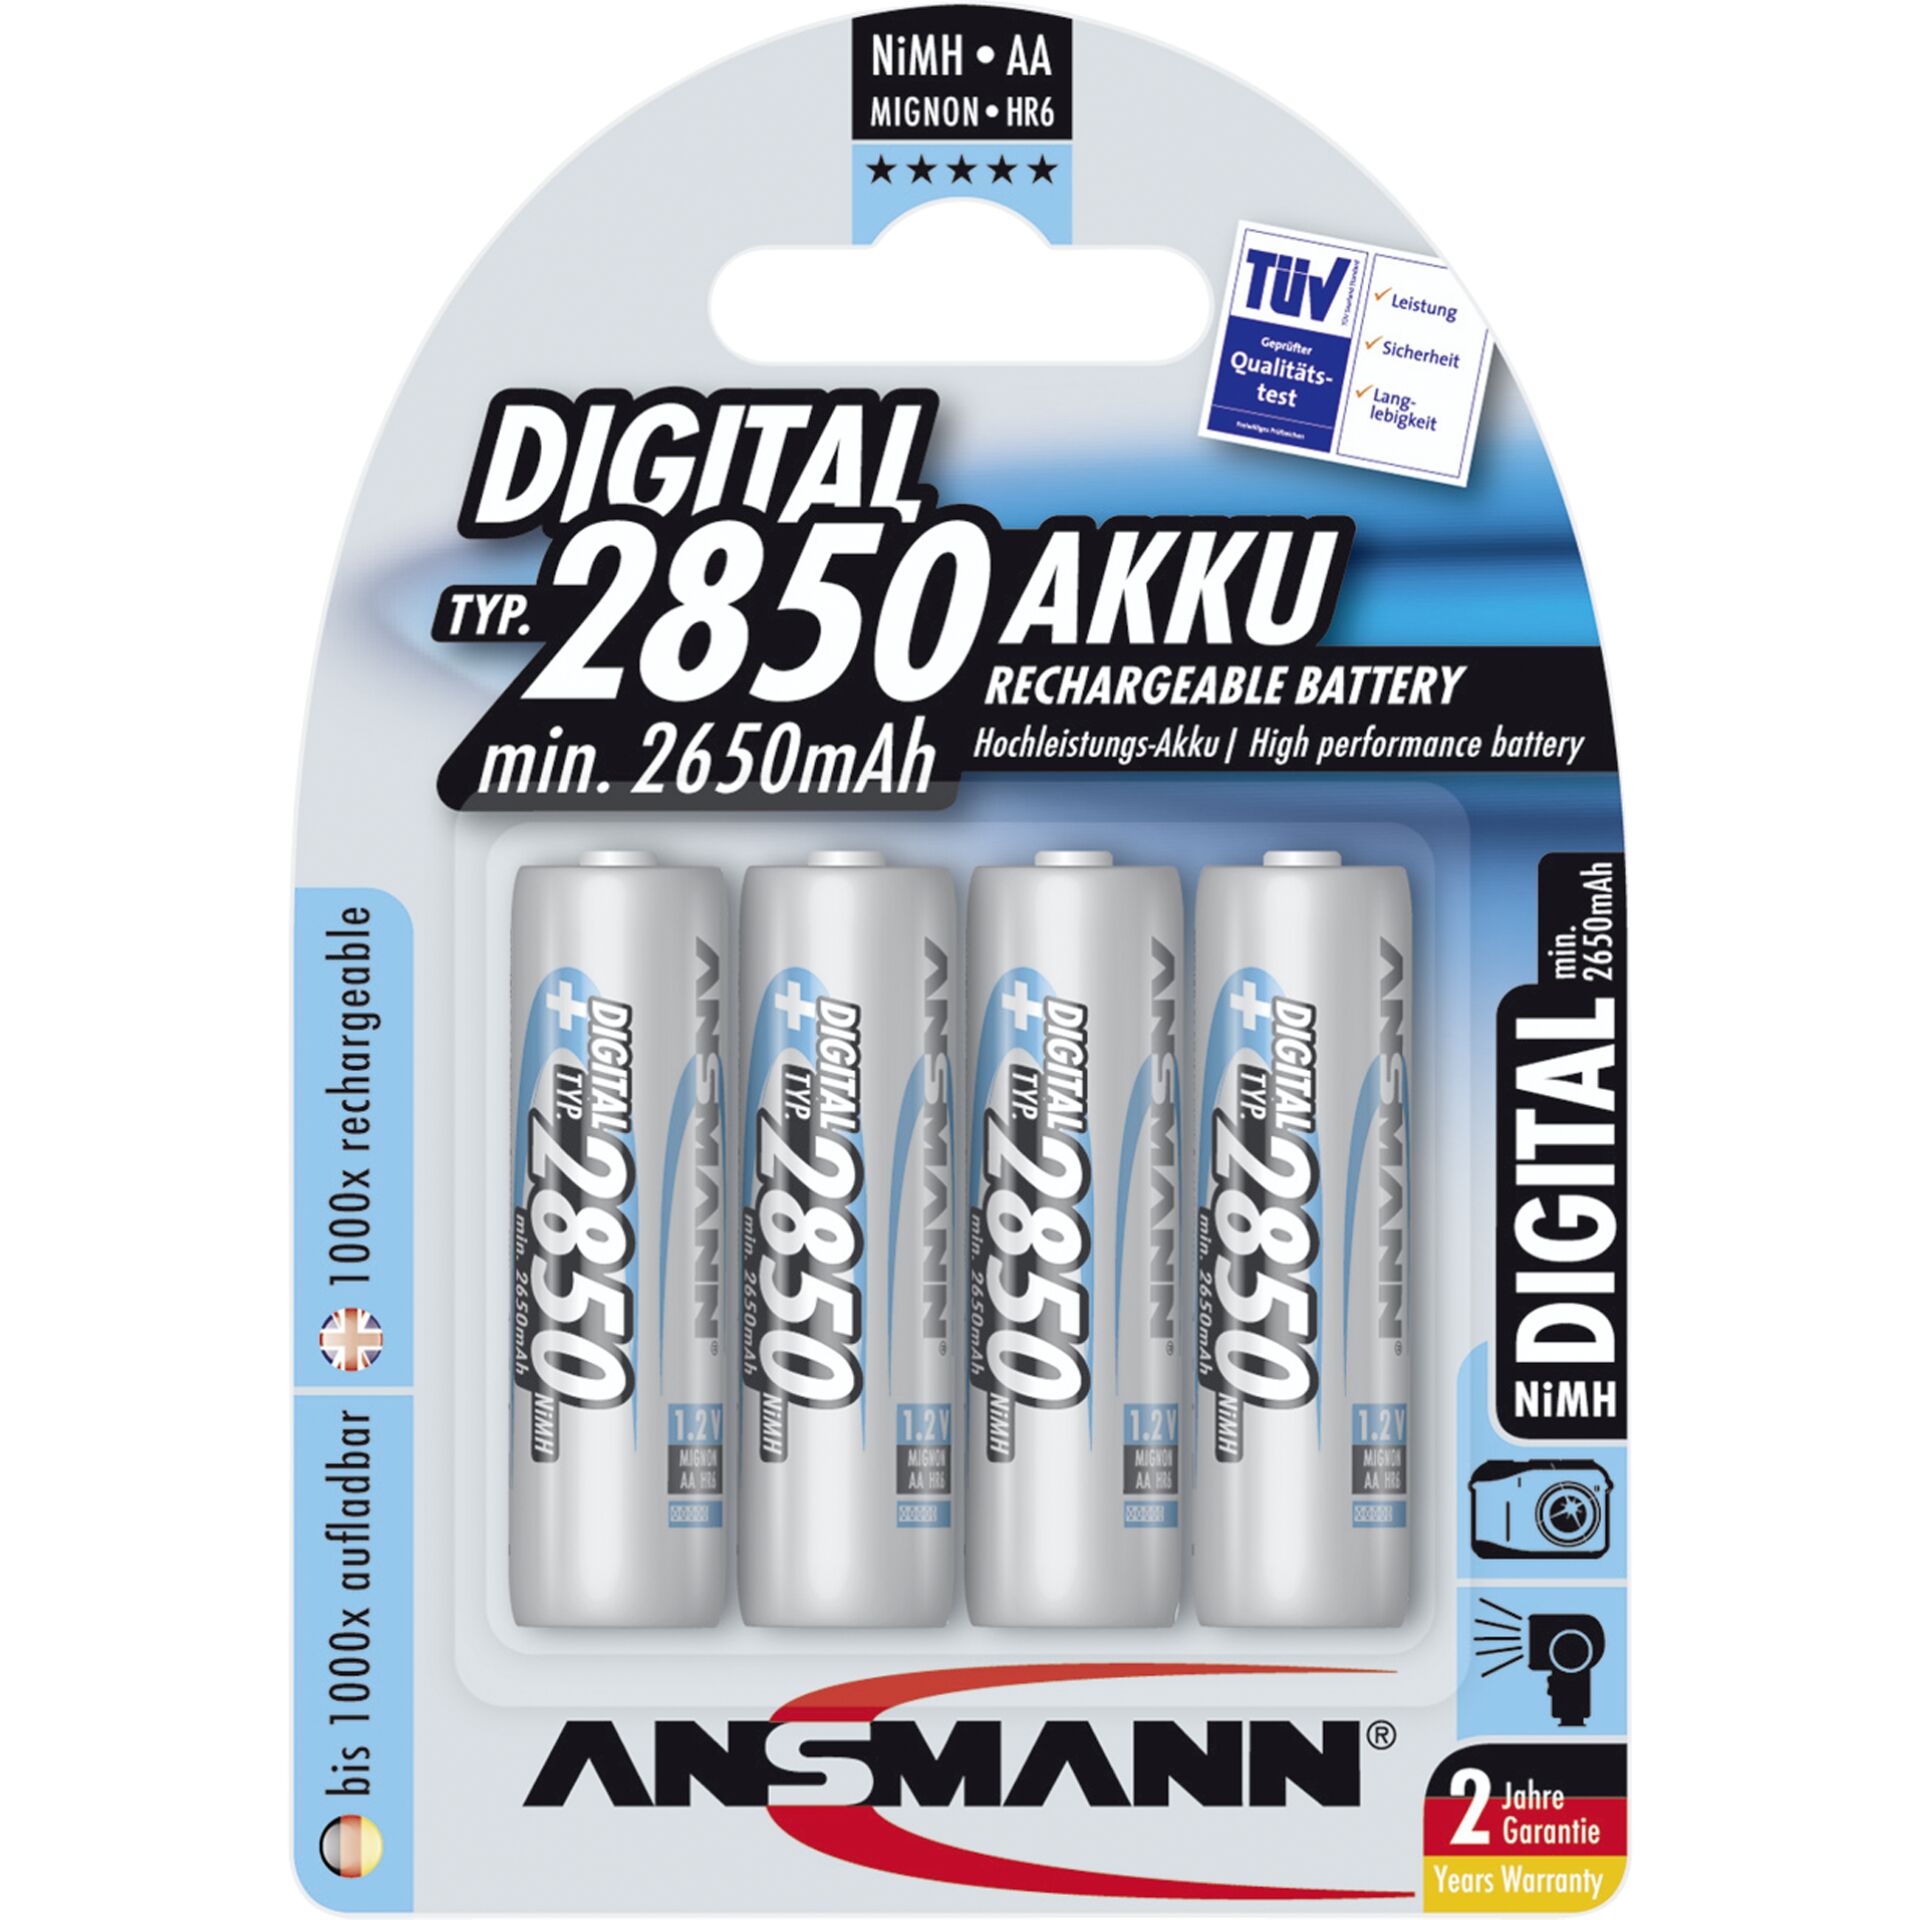 1x4 Ansmann NiMH batteria 2850 Mignon AA 2650 mAh DIGITAL